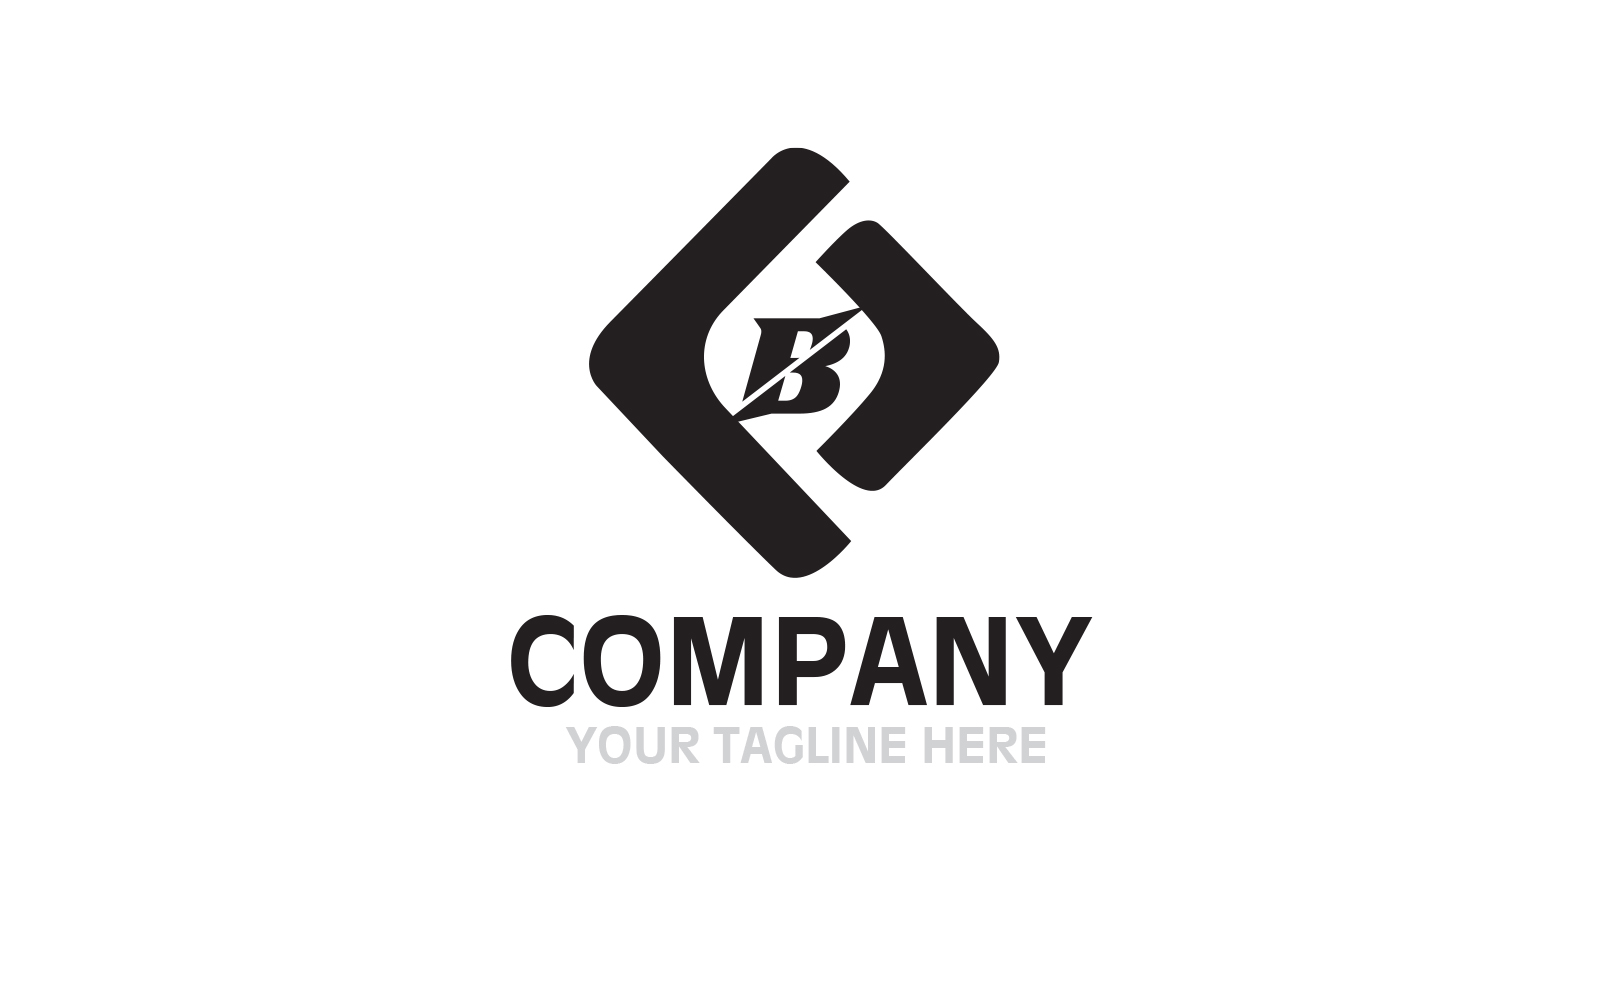 Company logo For All Company